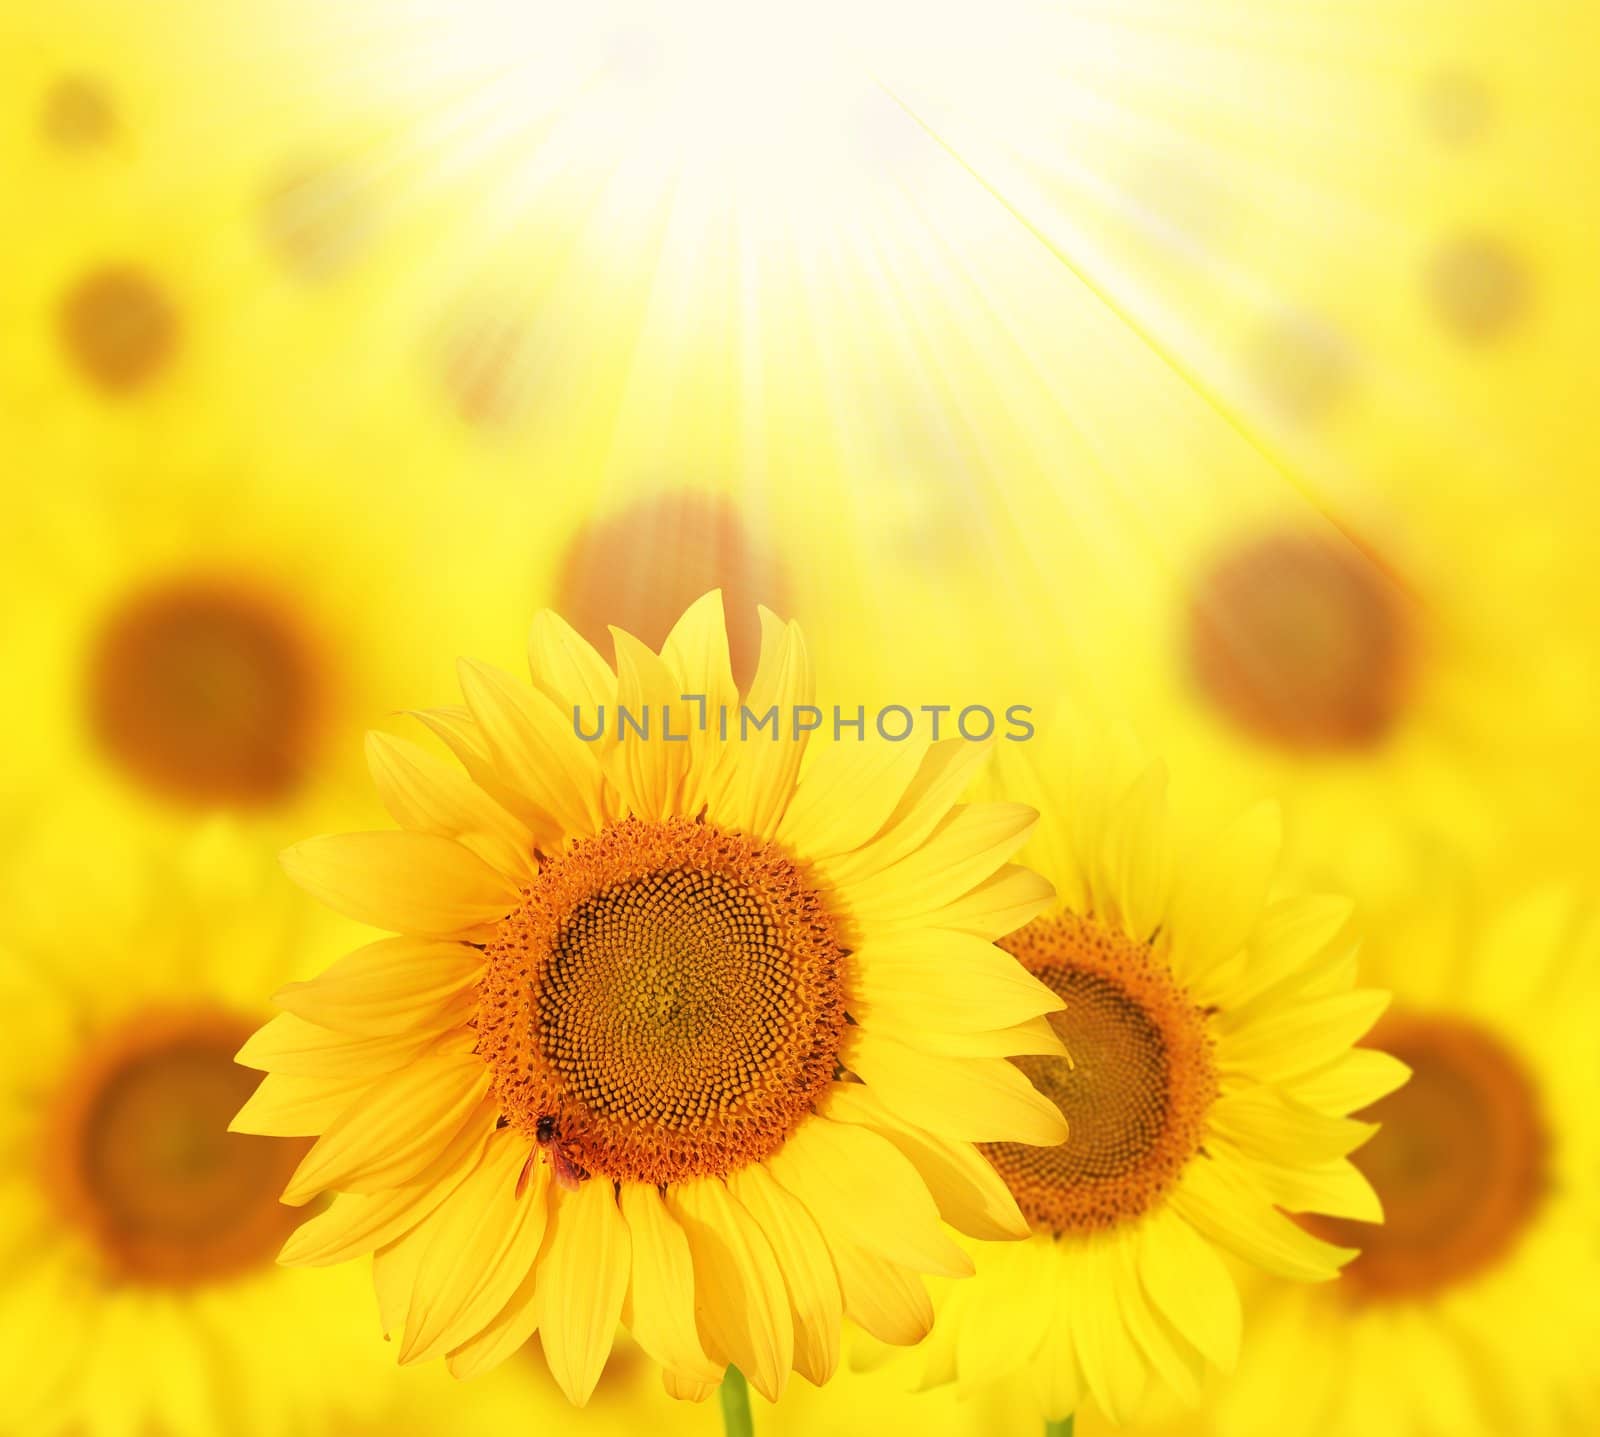 Full bloom sunflowers backlit by sun in a garden by mnsanthoshkumar